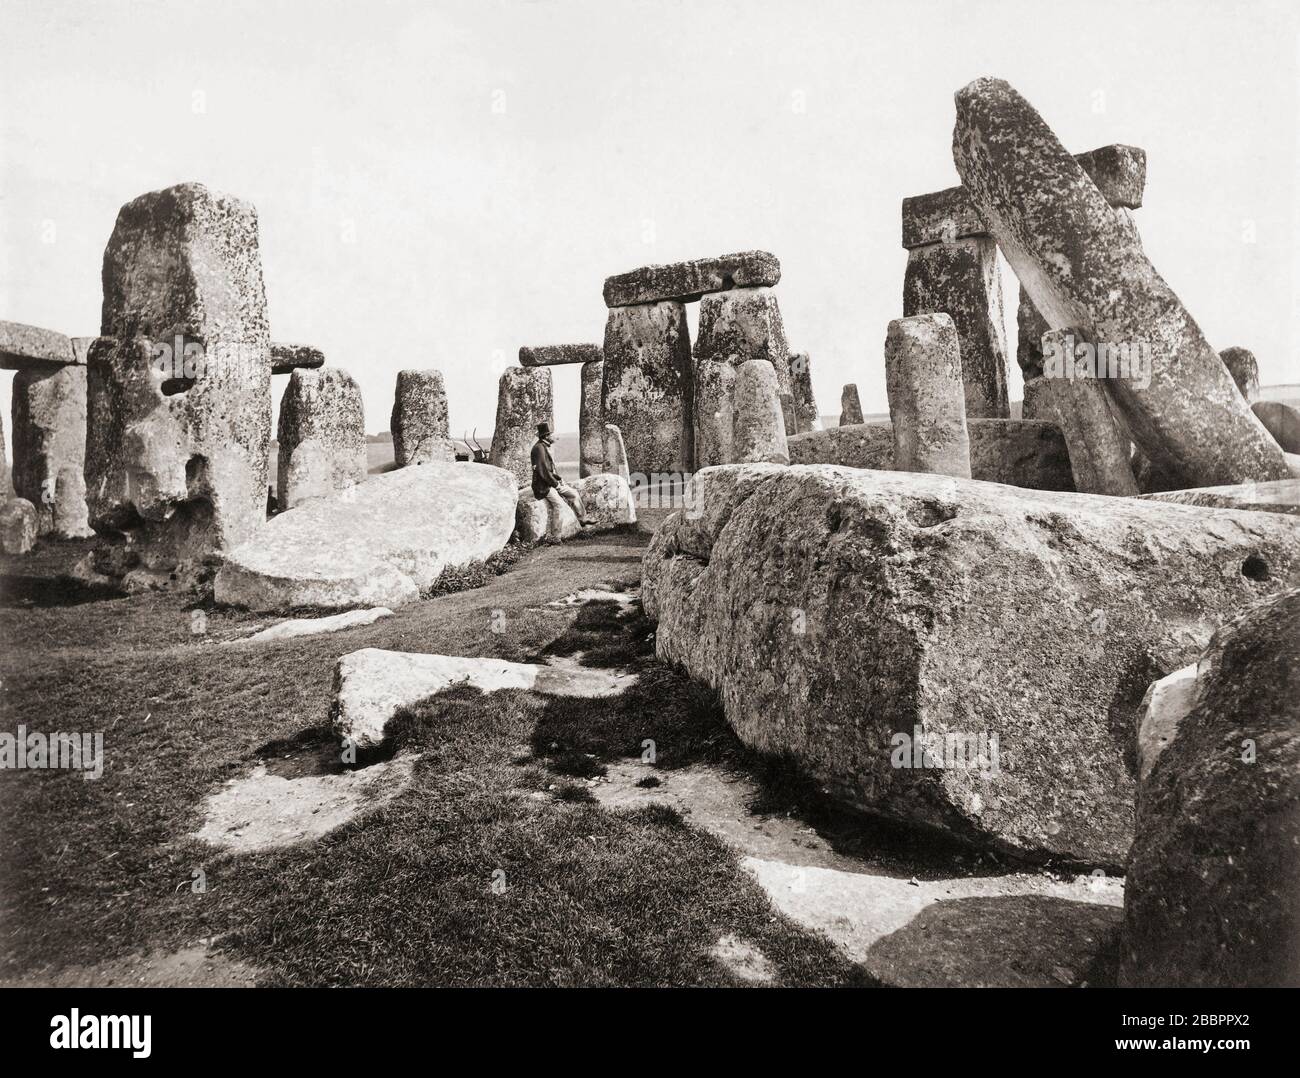 Stonehenge, Wiltshire, England. Fotografiert im späten 19. Jahrhundert, möglicherweise vom englischen Fotografen Francis Frith, zwischen den Jahren 182-1898. Stockfoto